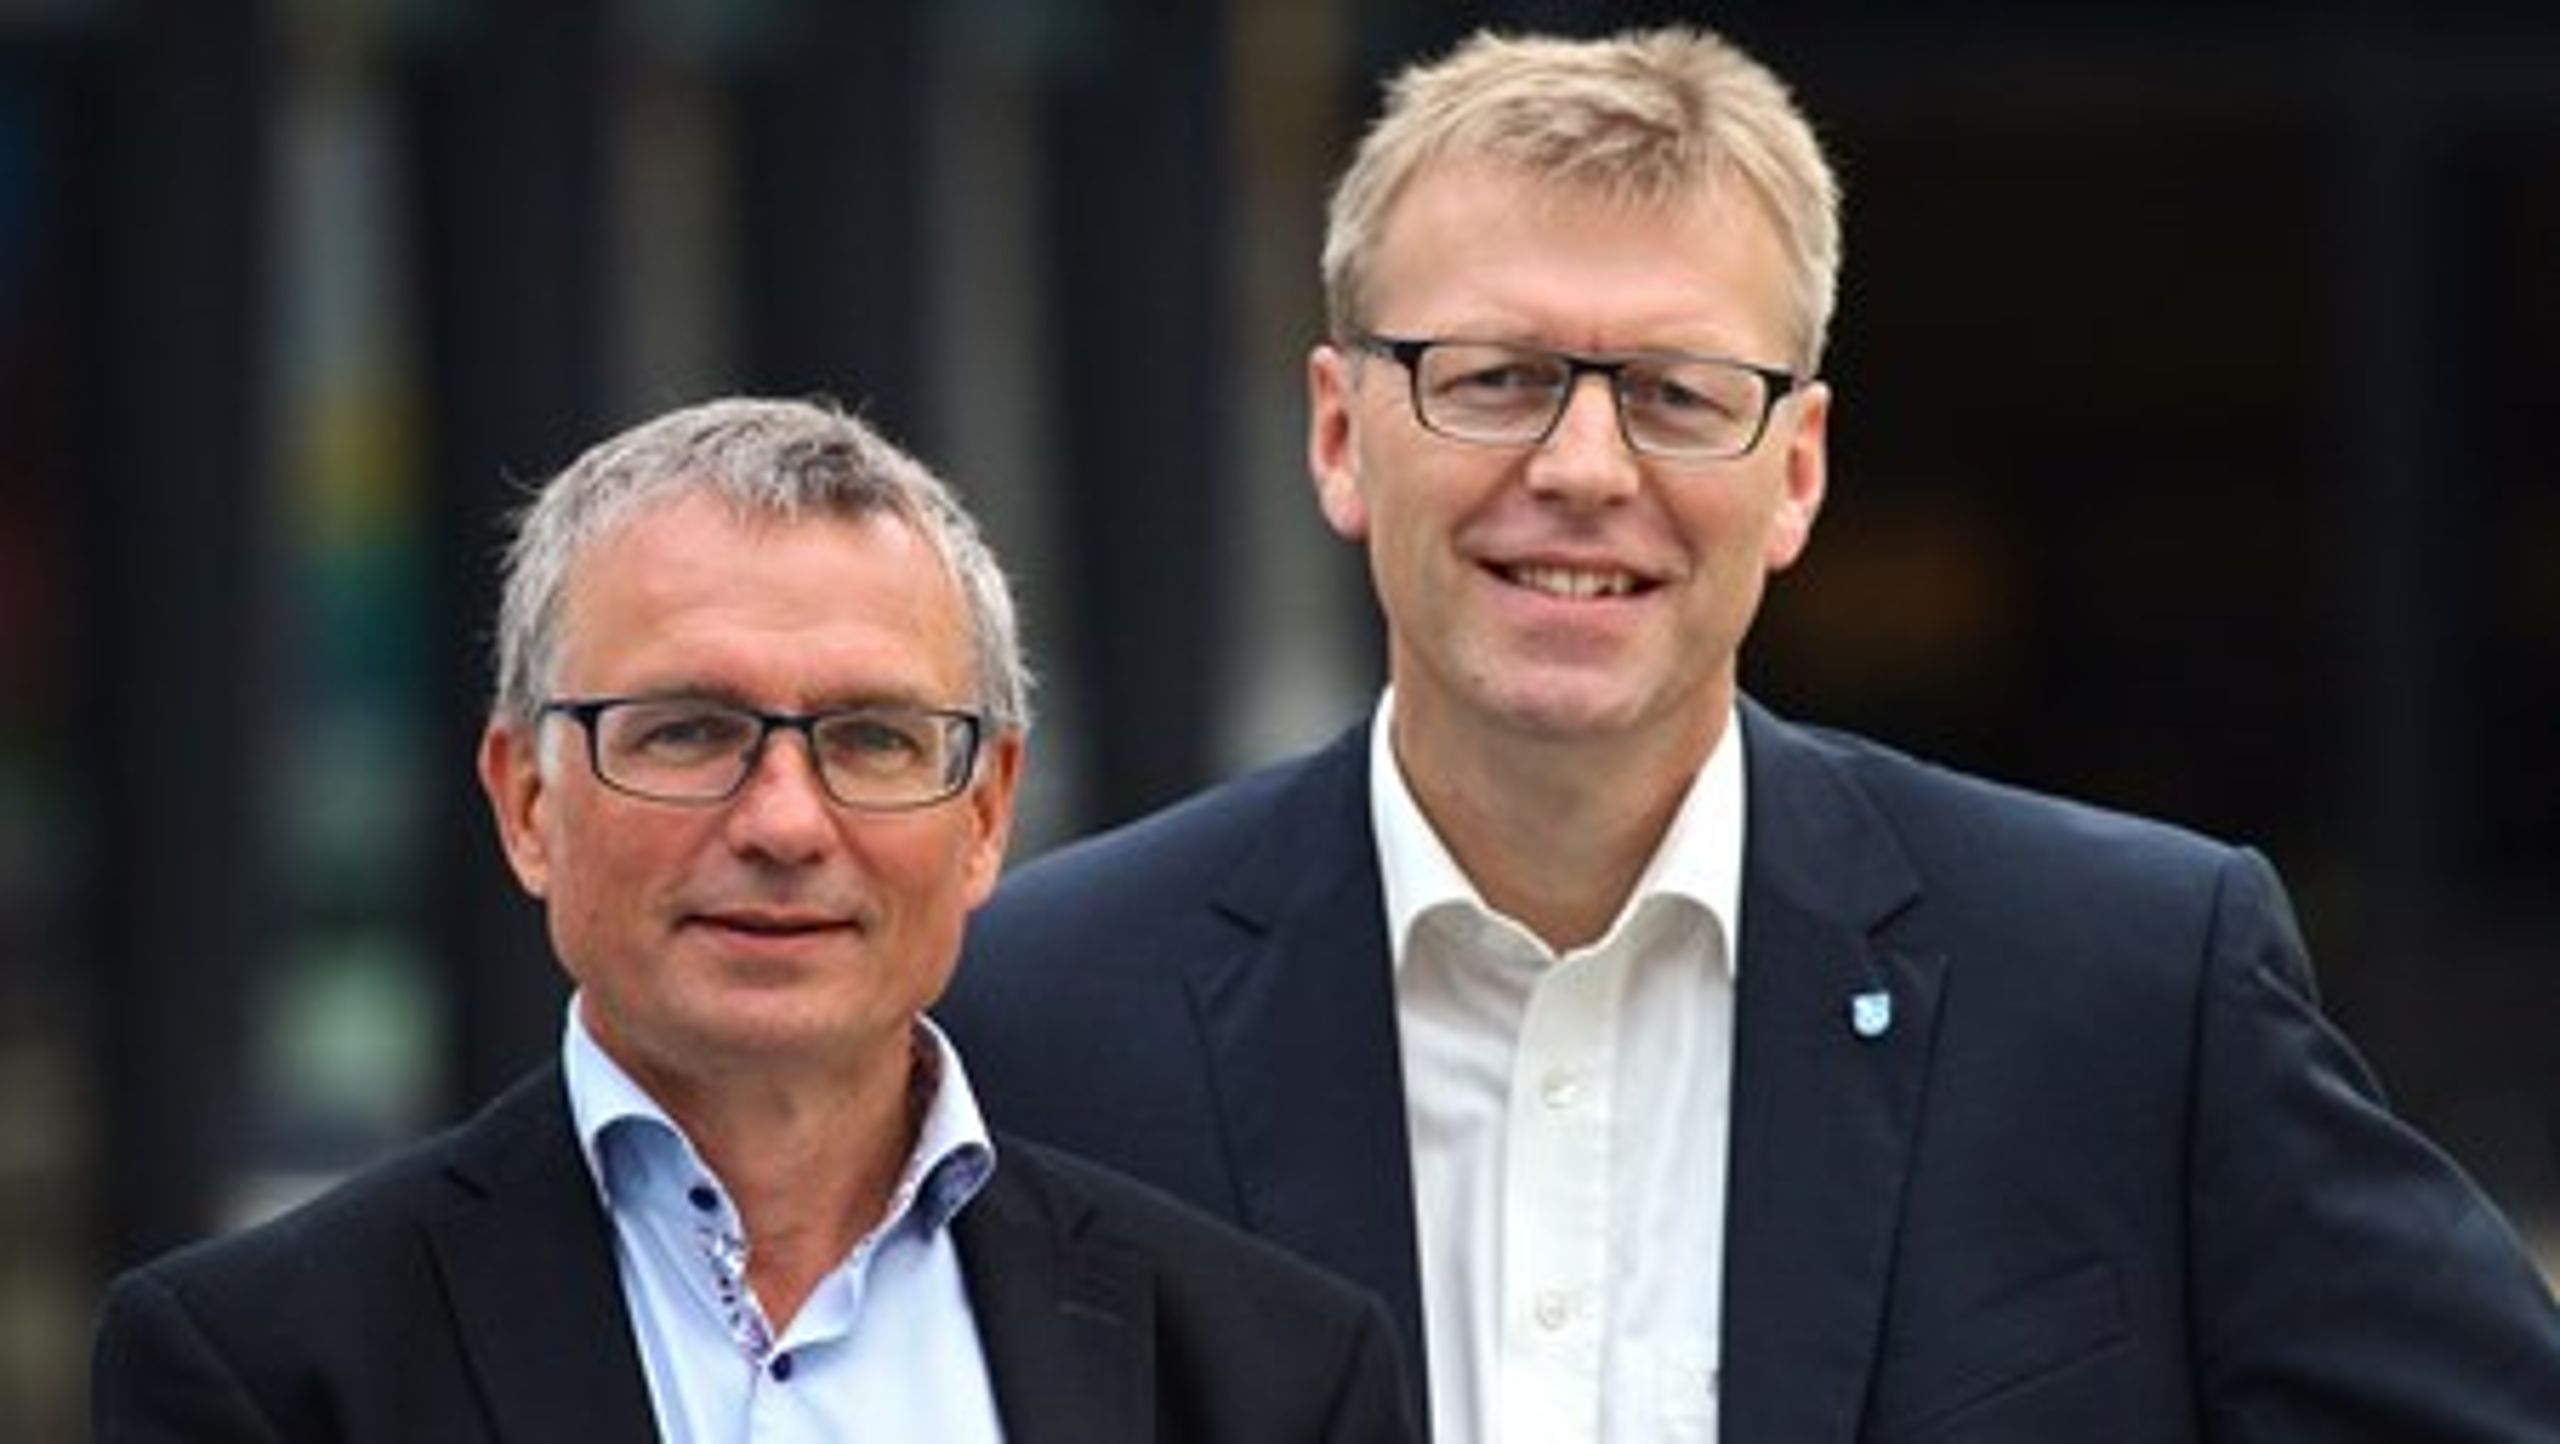 Formand for Dansk Affaldsforening Mads Jakobsen (til højre) her fotograferet sammen med næstformand Ole Bondo Christensen.